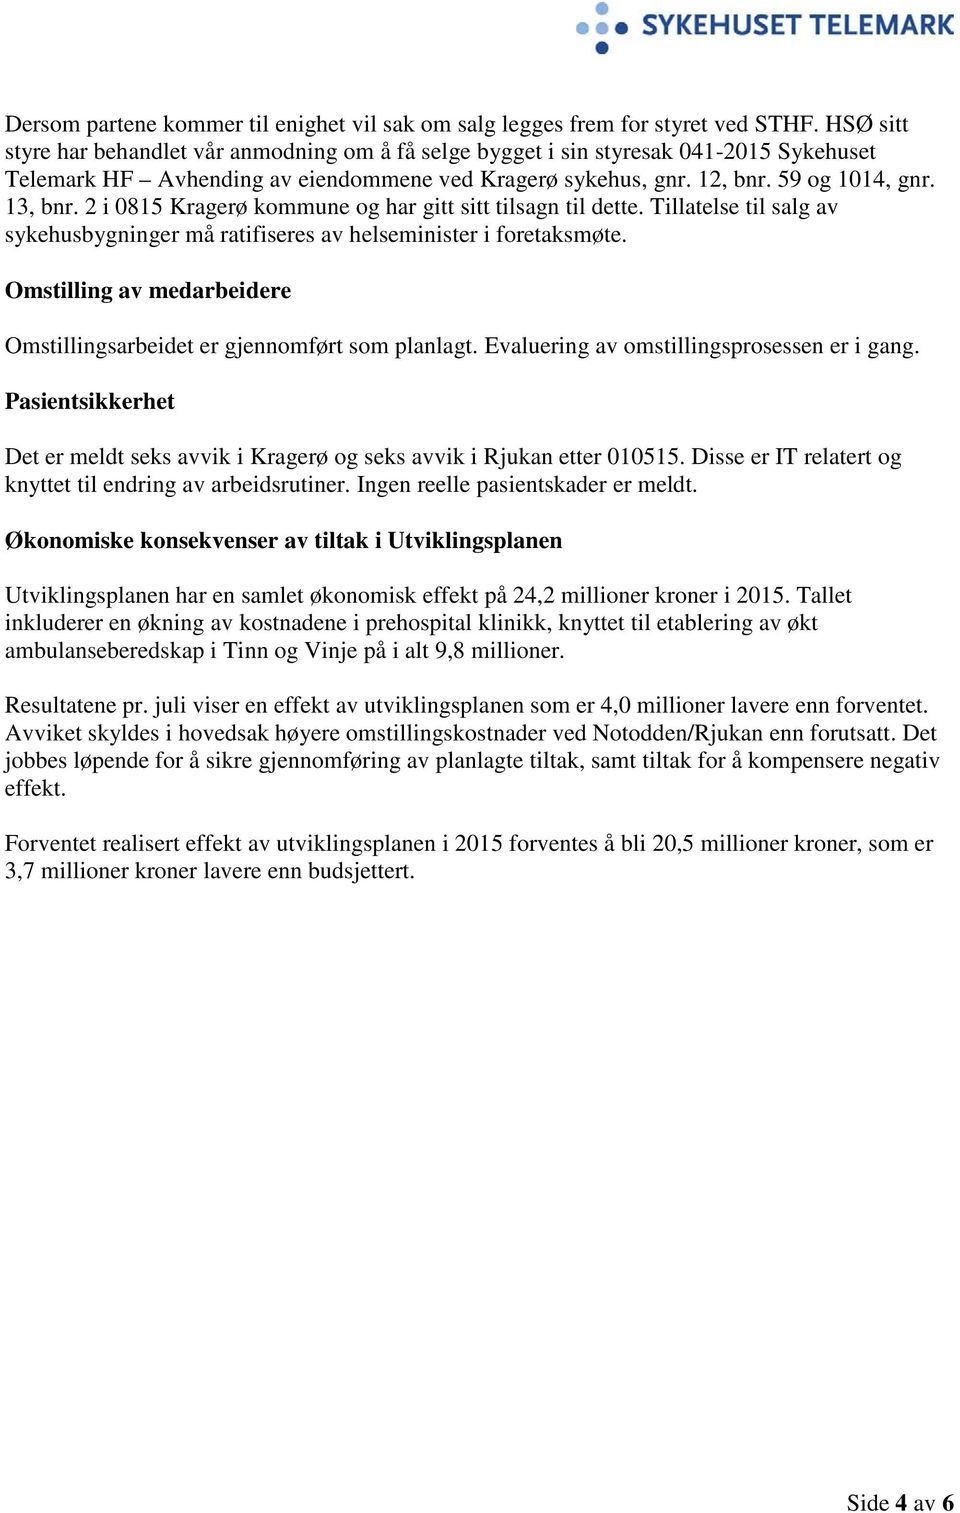 2 i 0815 Kragerø kommune og har gitt sitt tilsagn til dette. Tillatelse til salg av sykehusbygninger må ratifiseres av helseminister i foretaksmøte.